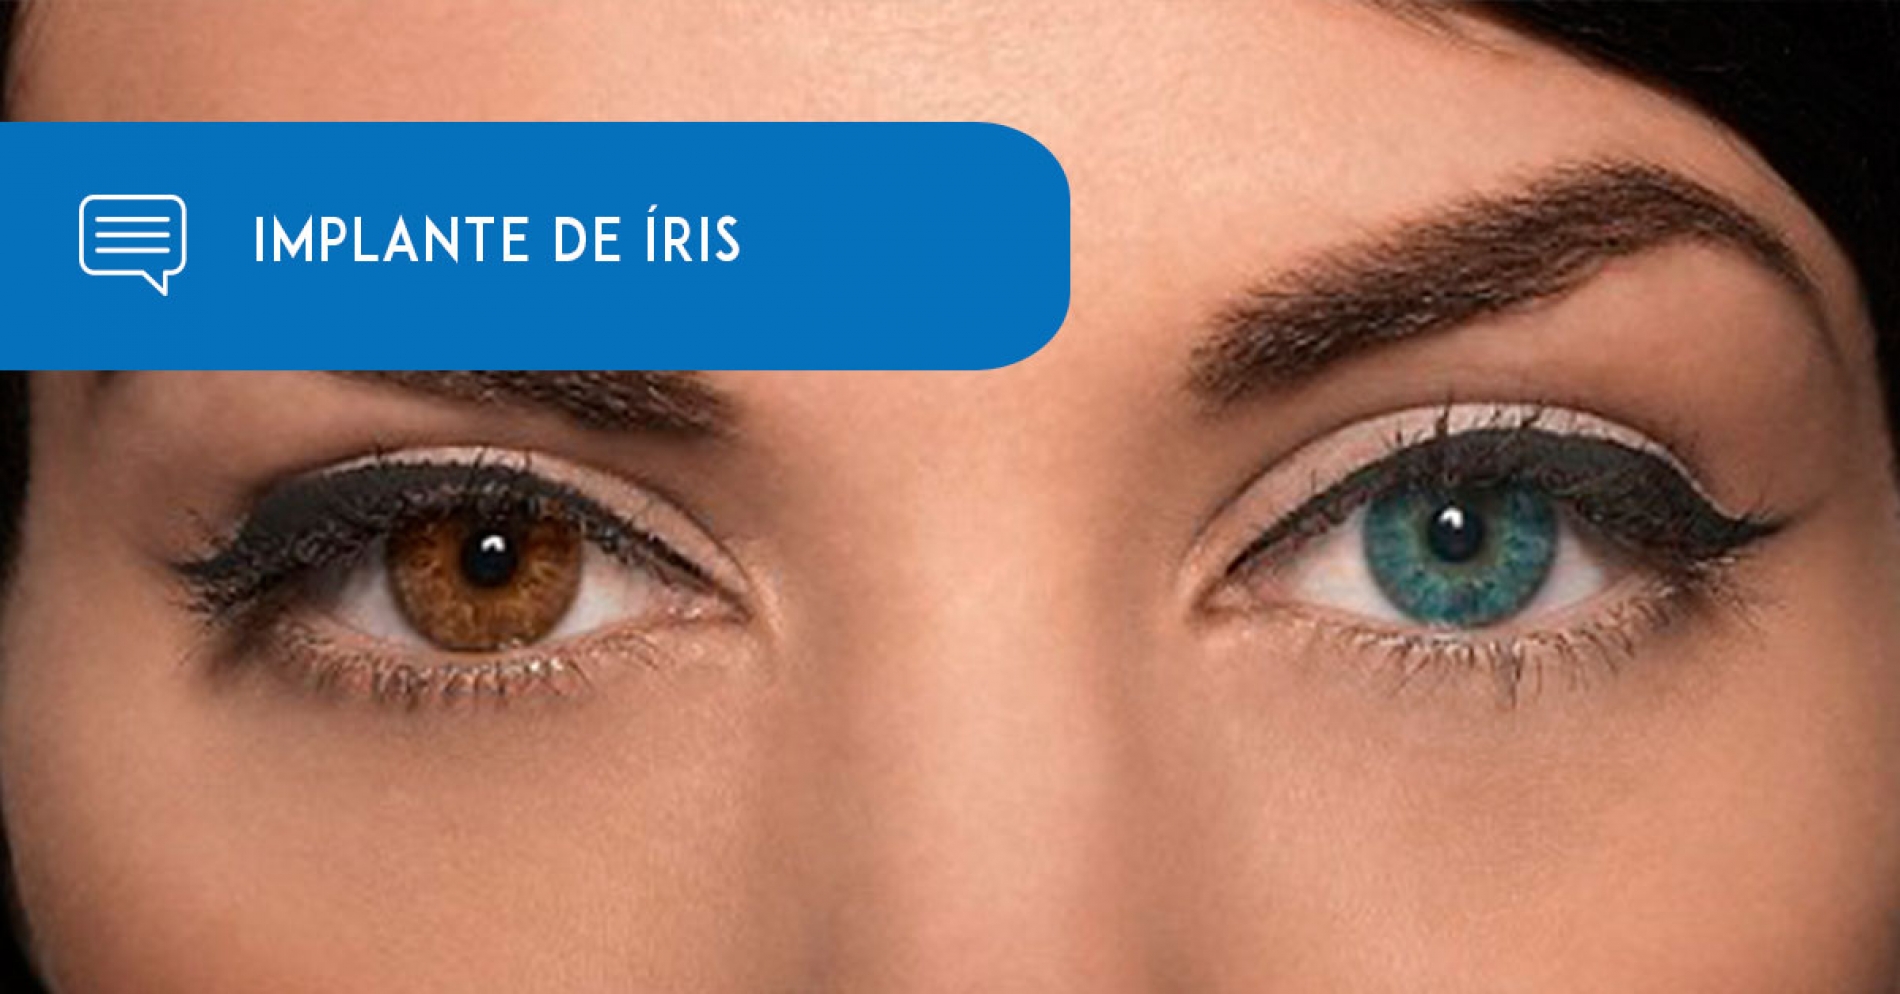 Implantes de íris têm risco de danos permanentes nos olhos, e perda de visão. - Eduardo Paulino